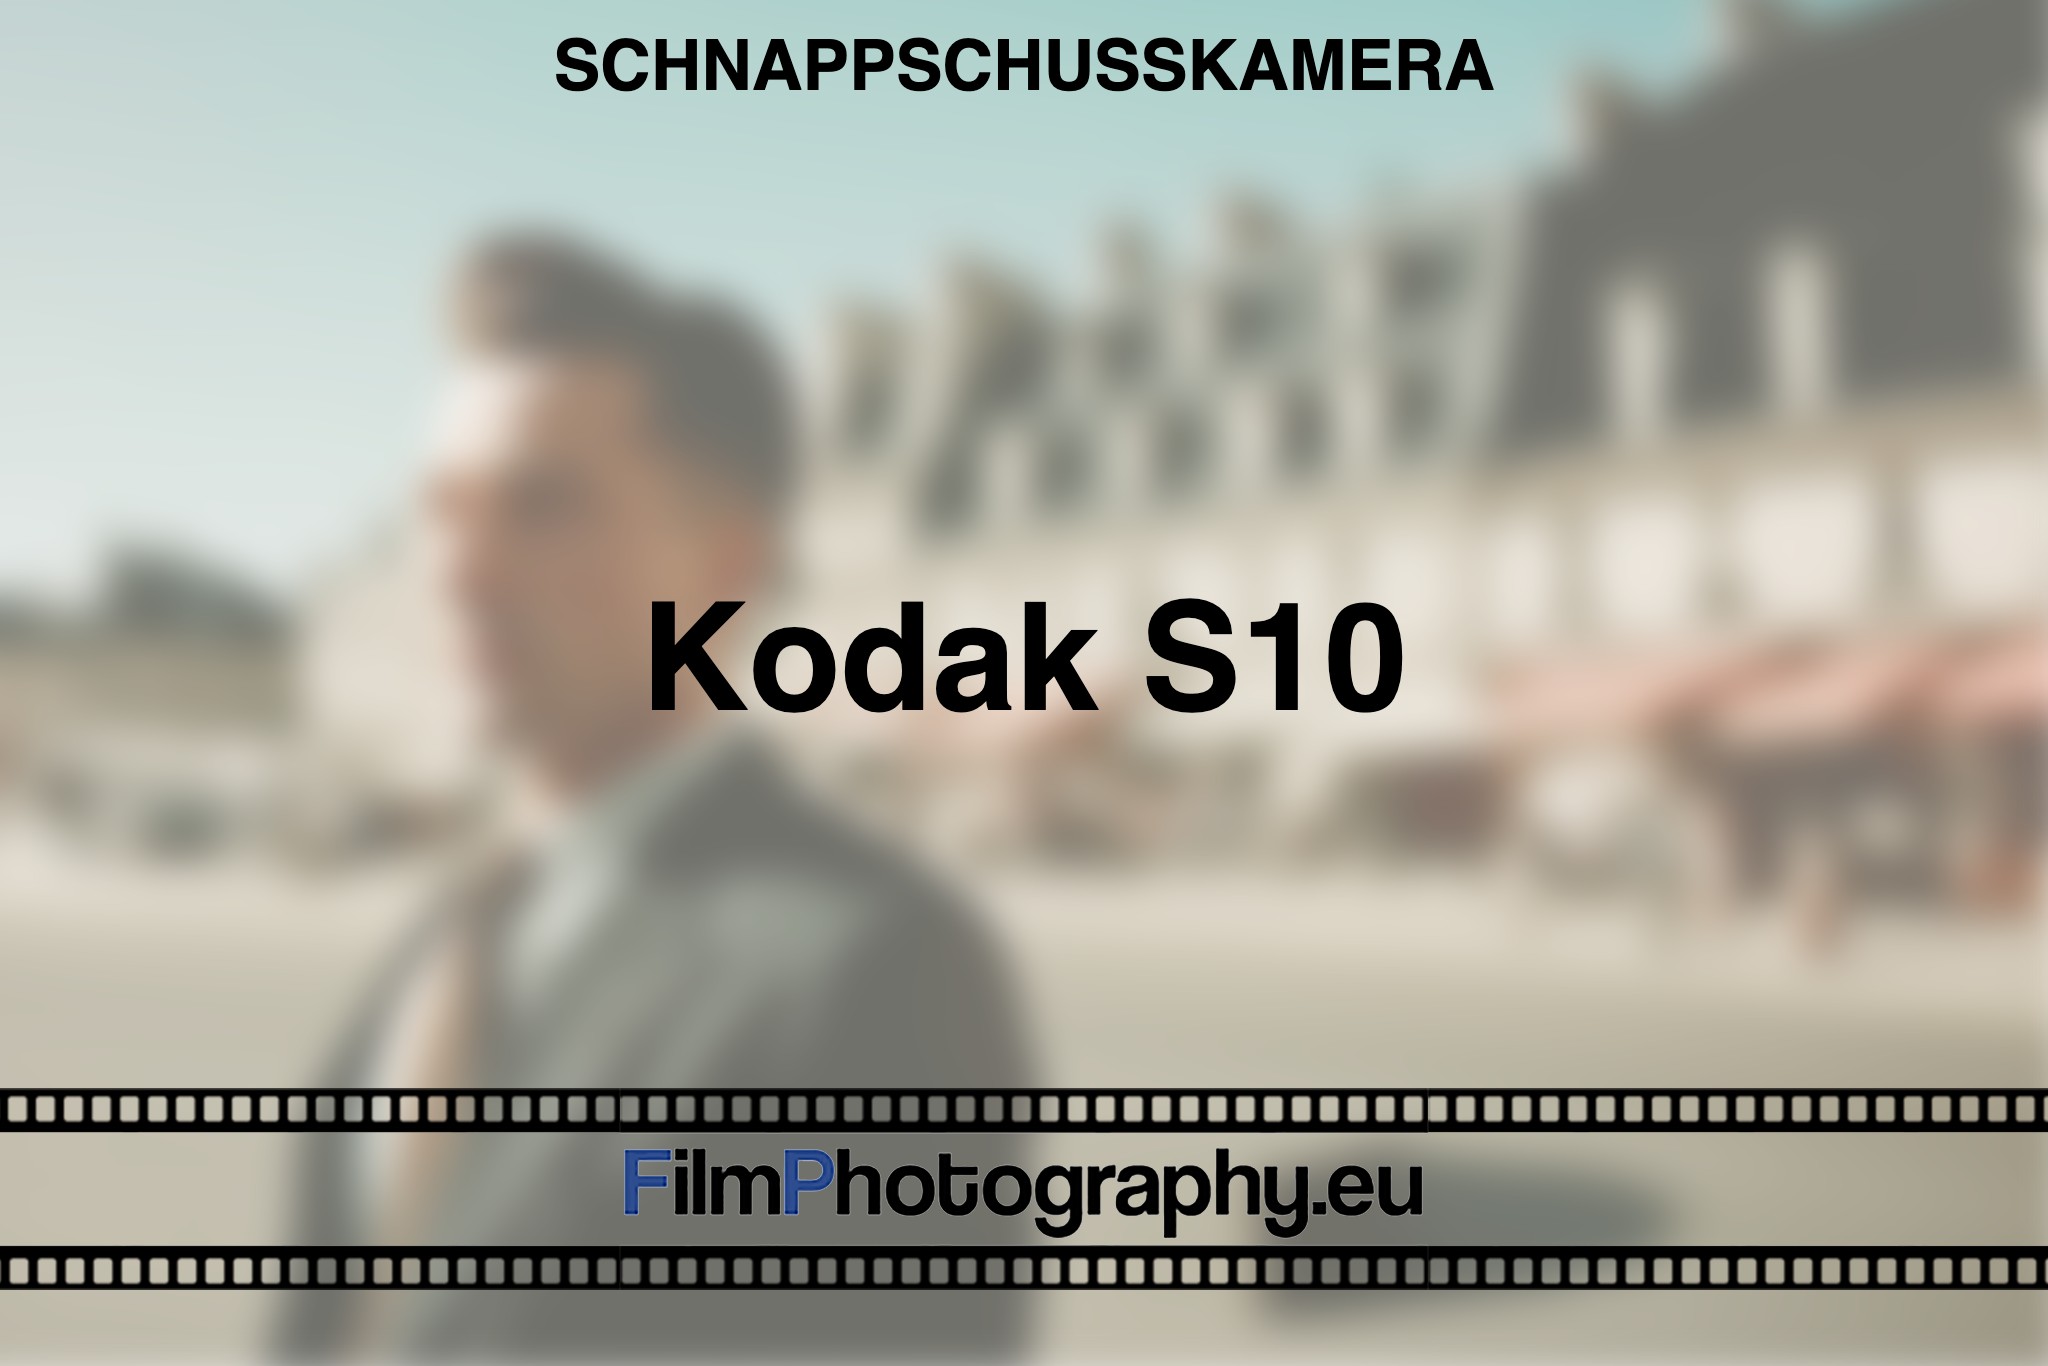 kodak-s10-schnappschusskamera-bnv